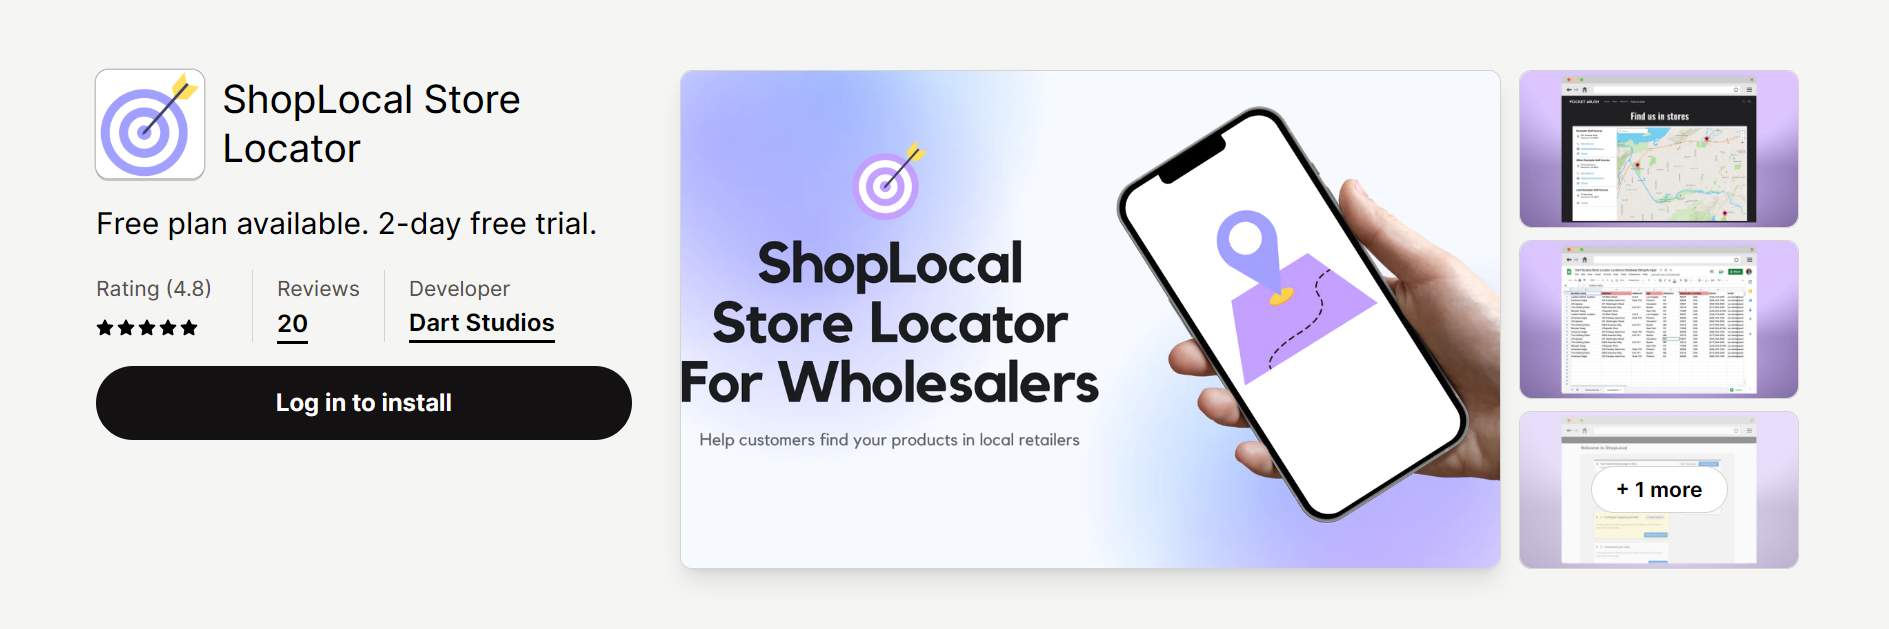 ShopLocal Store Locator